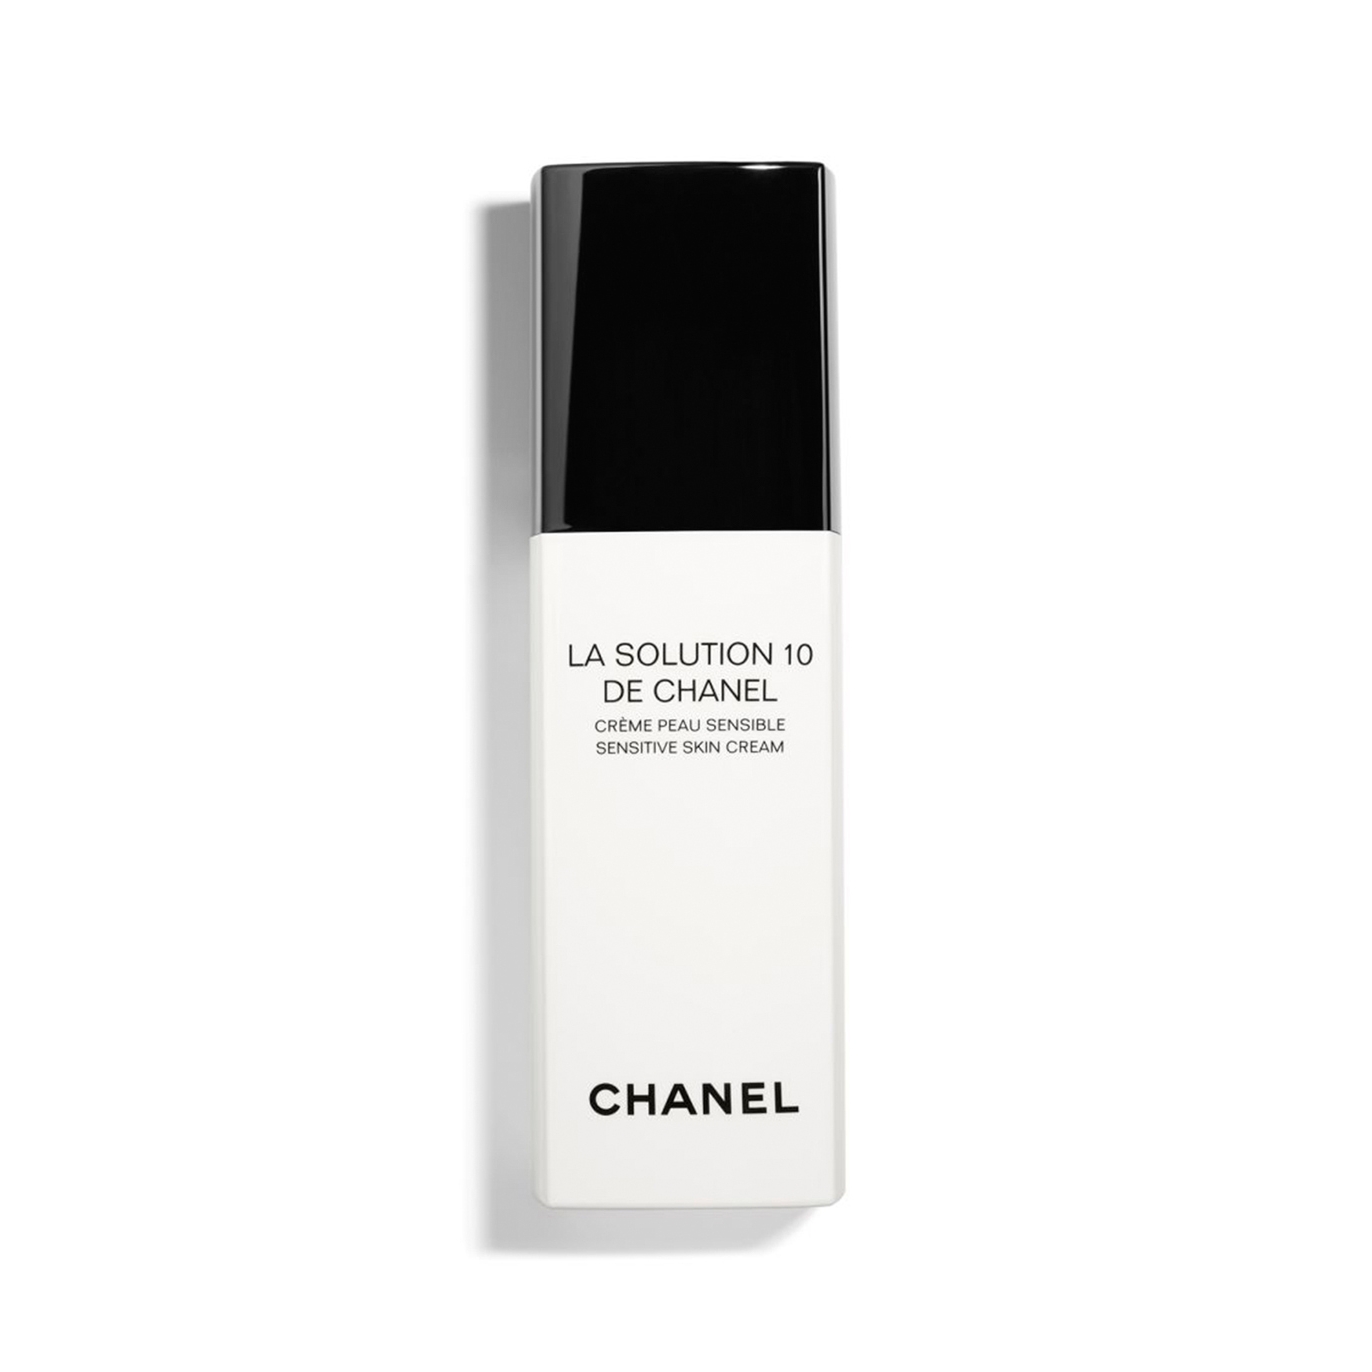 Chanel Sensitive Skin Cream